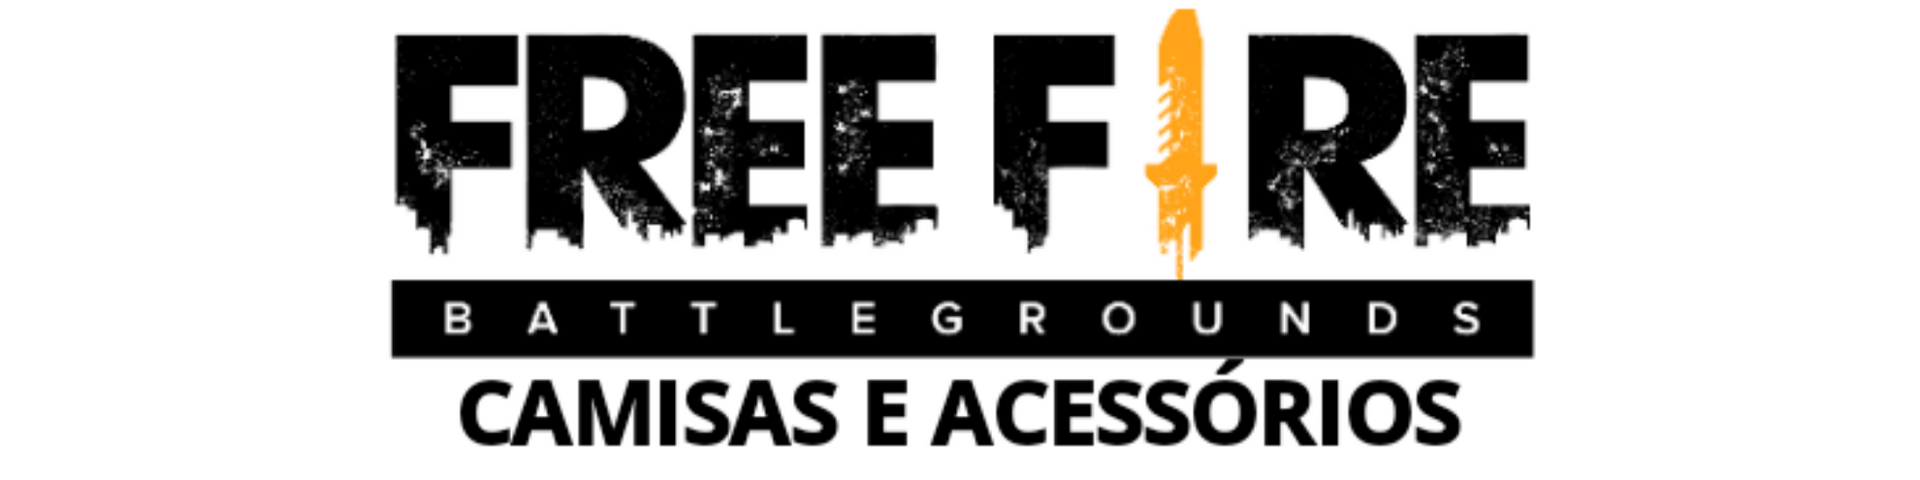 FREE FIRE - CAMISAS E ACESSÓRIOS